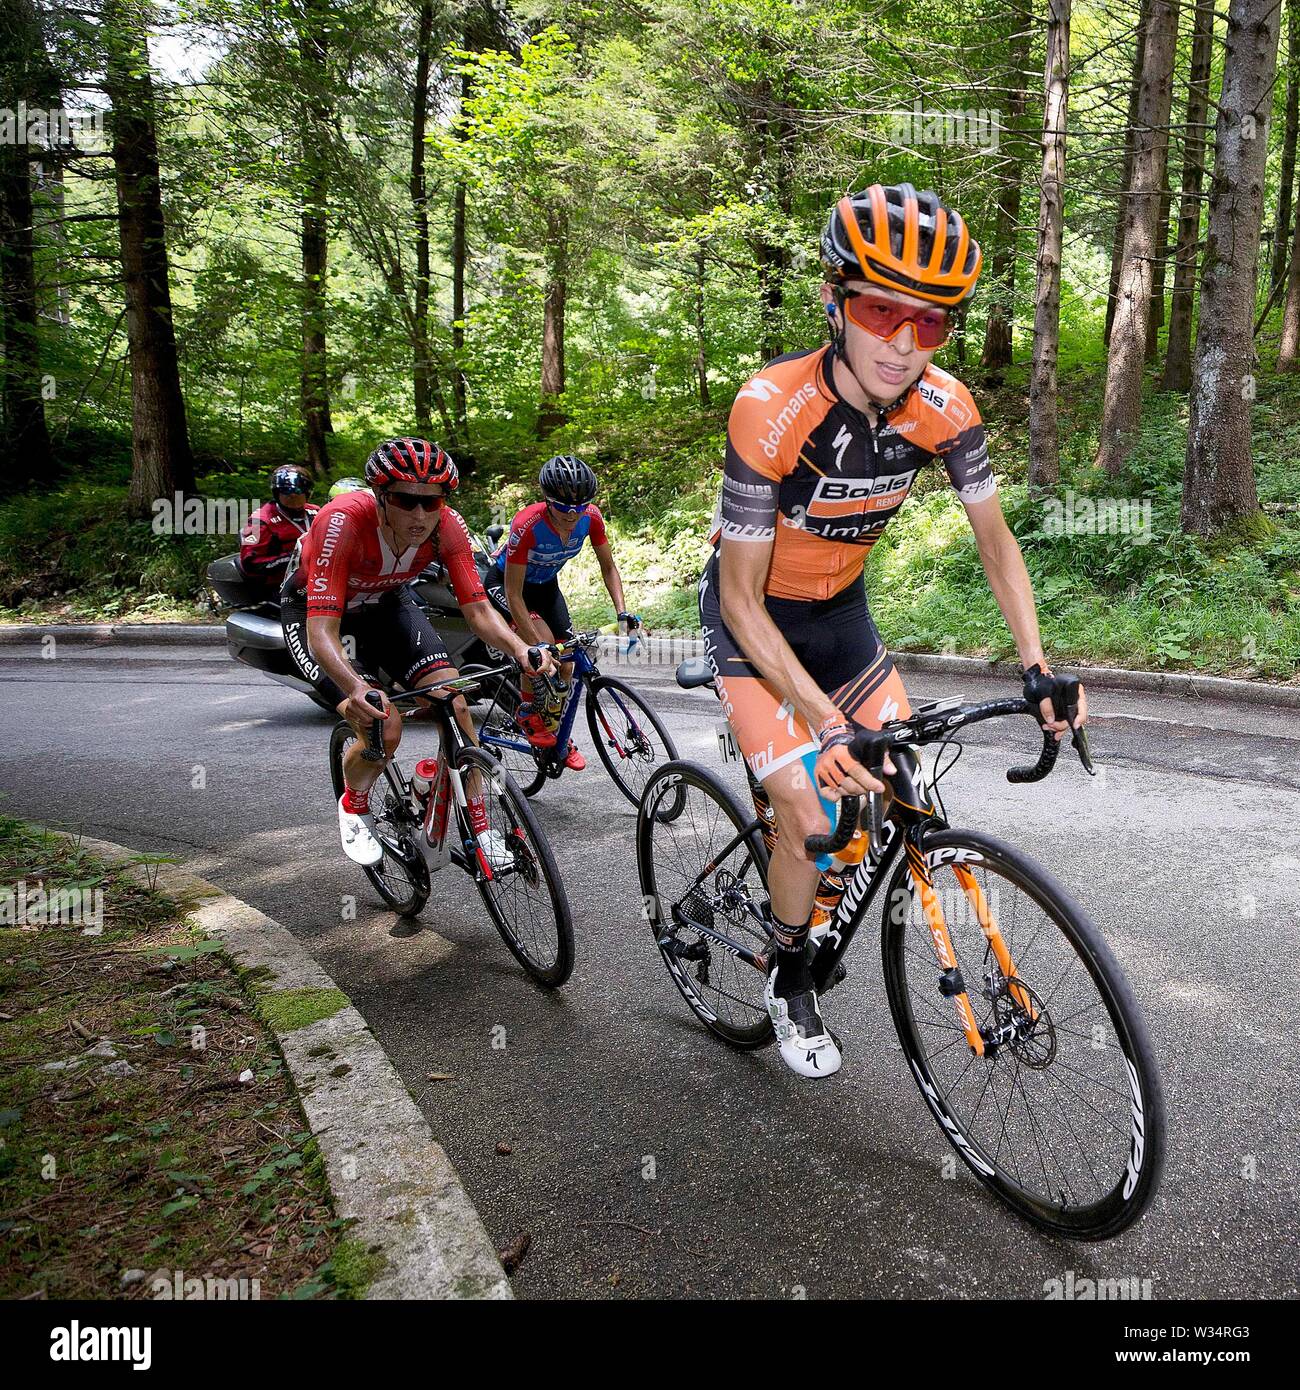 Maniago - 12-07-2019, cycling, Stage 8, etappe 8 Vittorio Veneto-Maniago, giro rosa, Katie Hall, in the attack Stock Photo